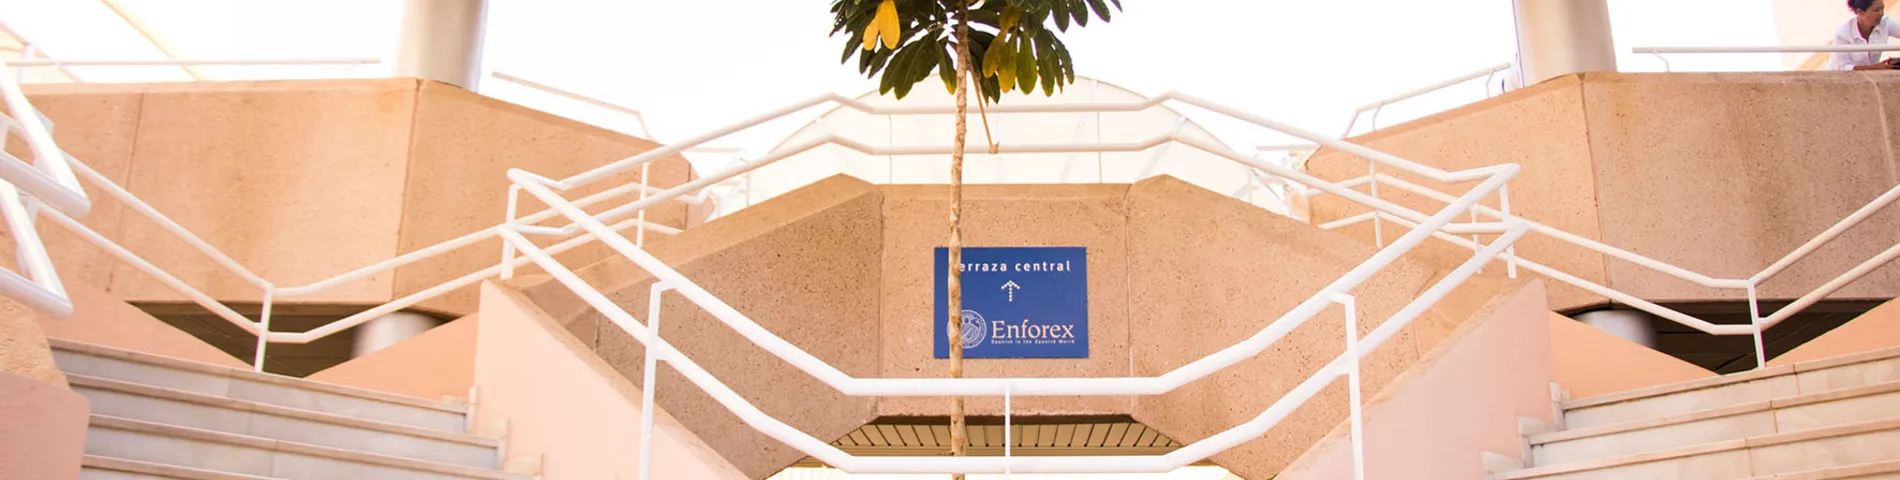 Enforex International Summer Centre - Centro bild 1